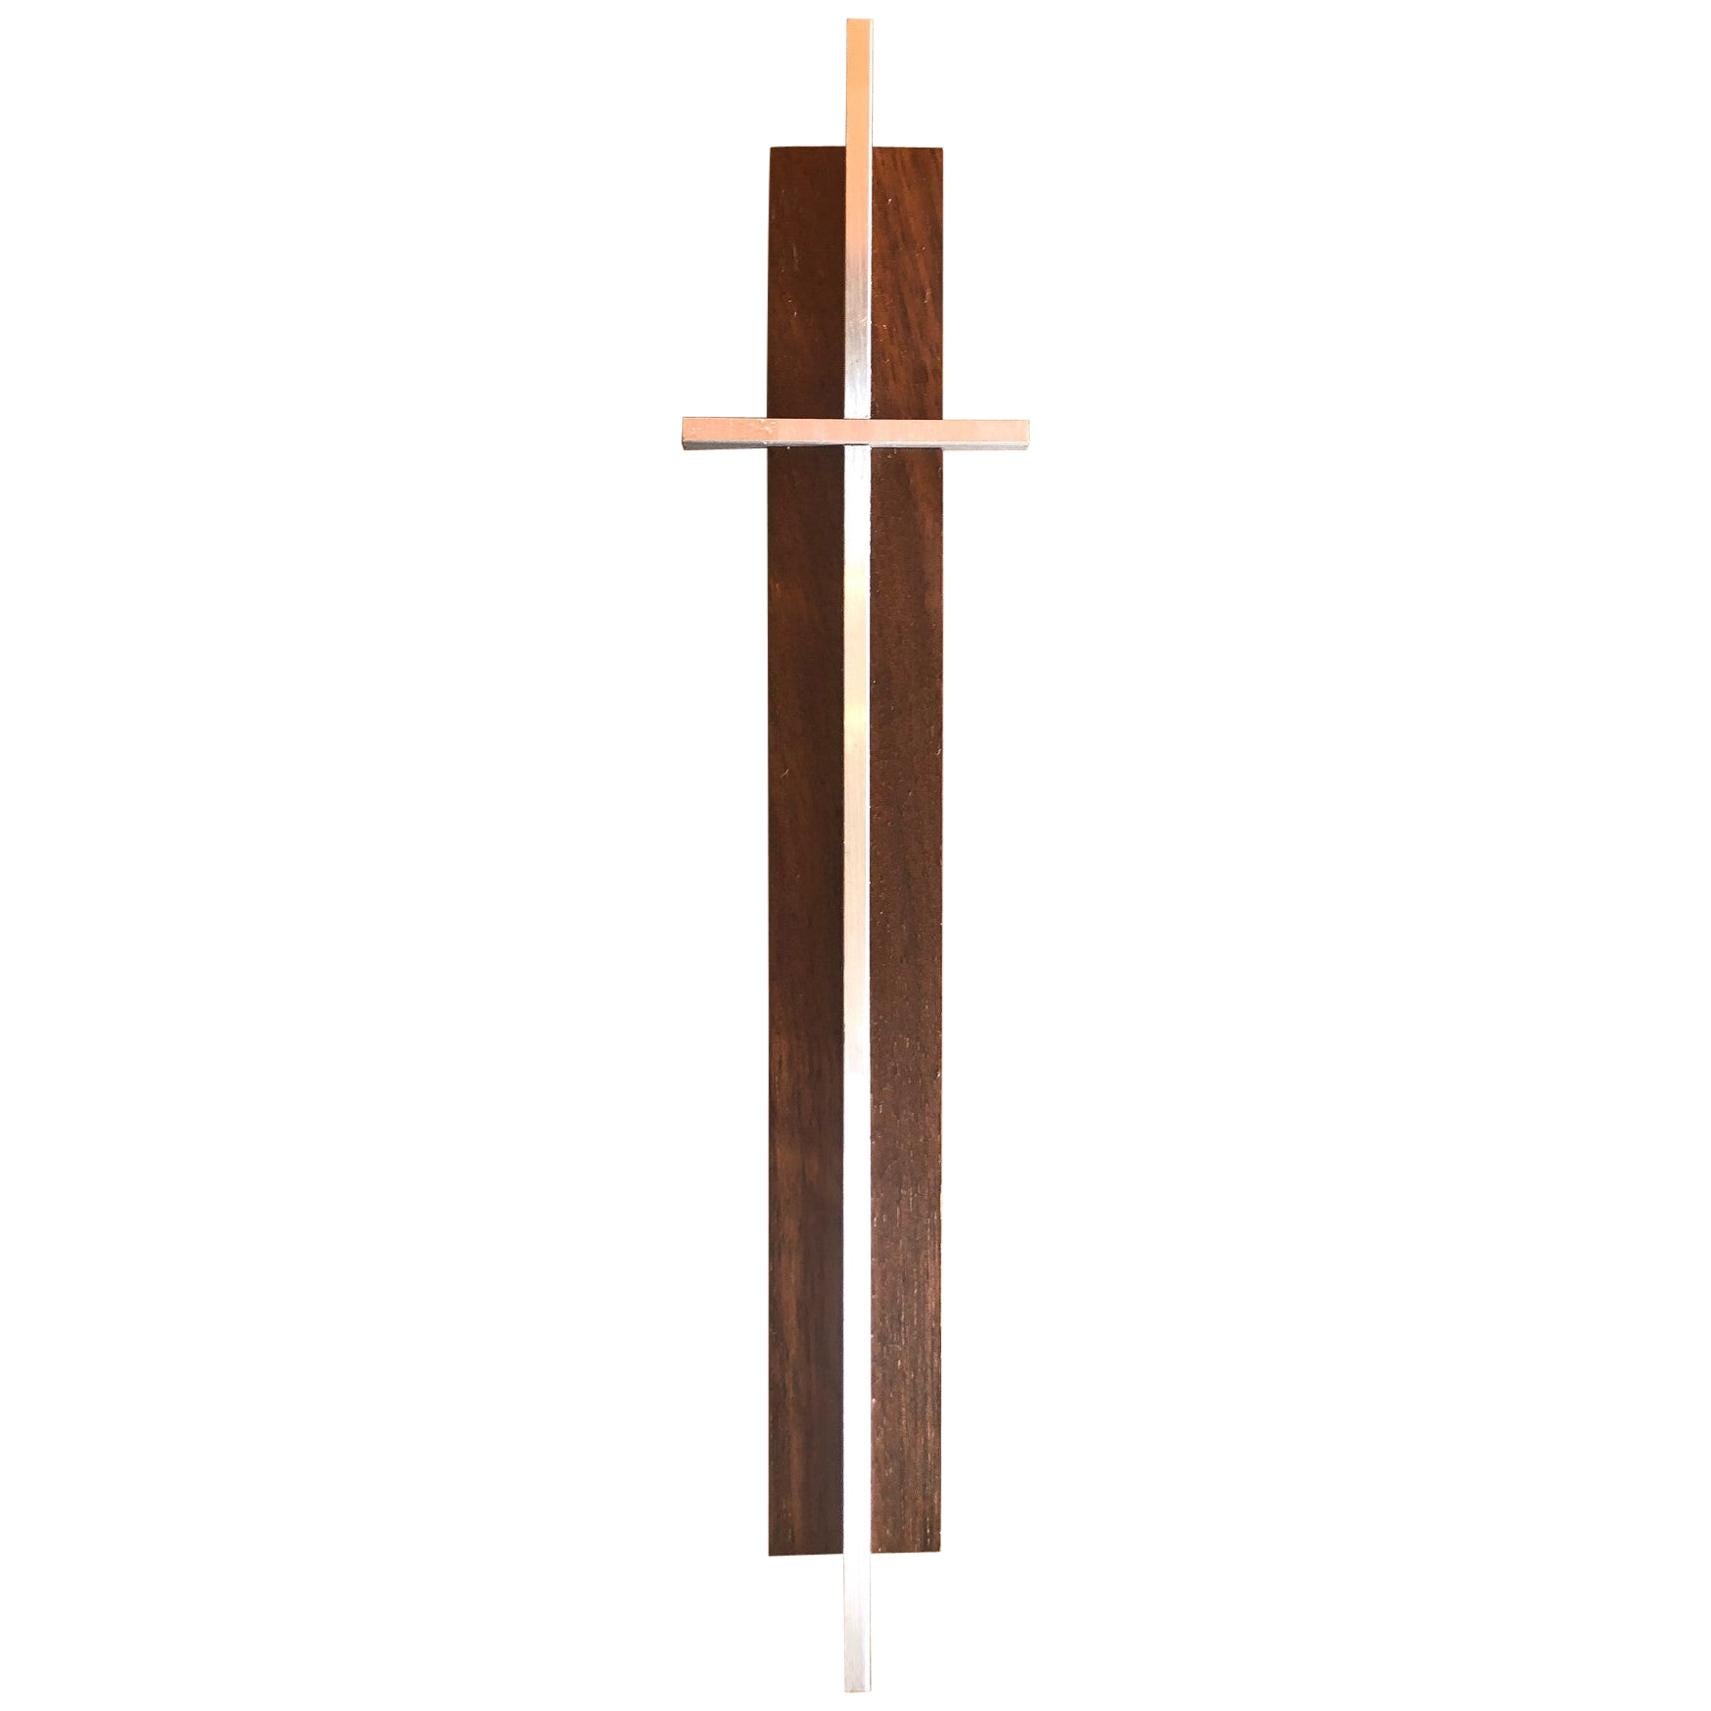 Kleines minimalistisches Kruzifix / Kreuz aus Nussbaum und Aluminium